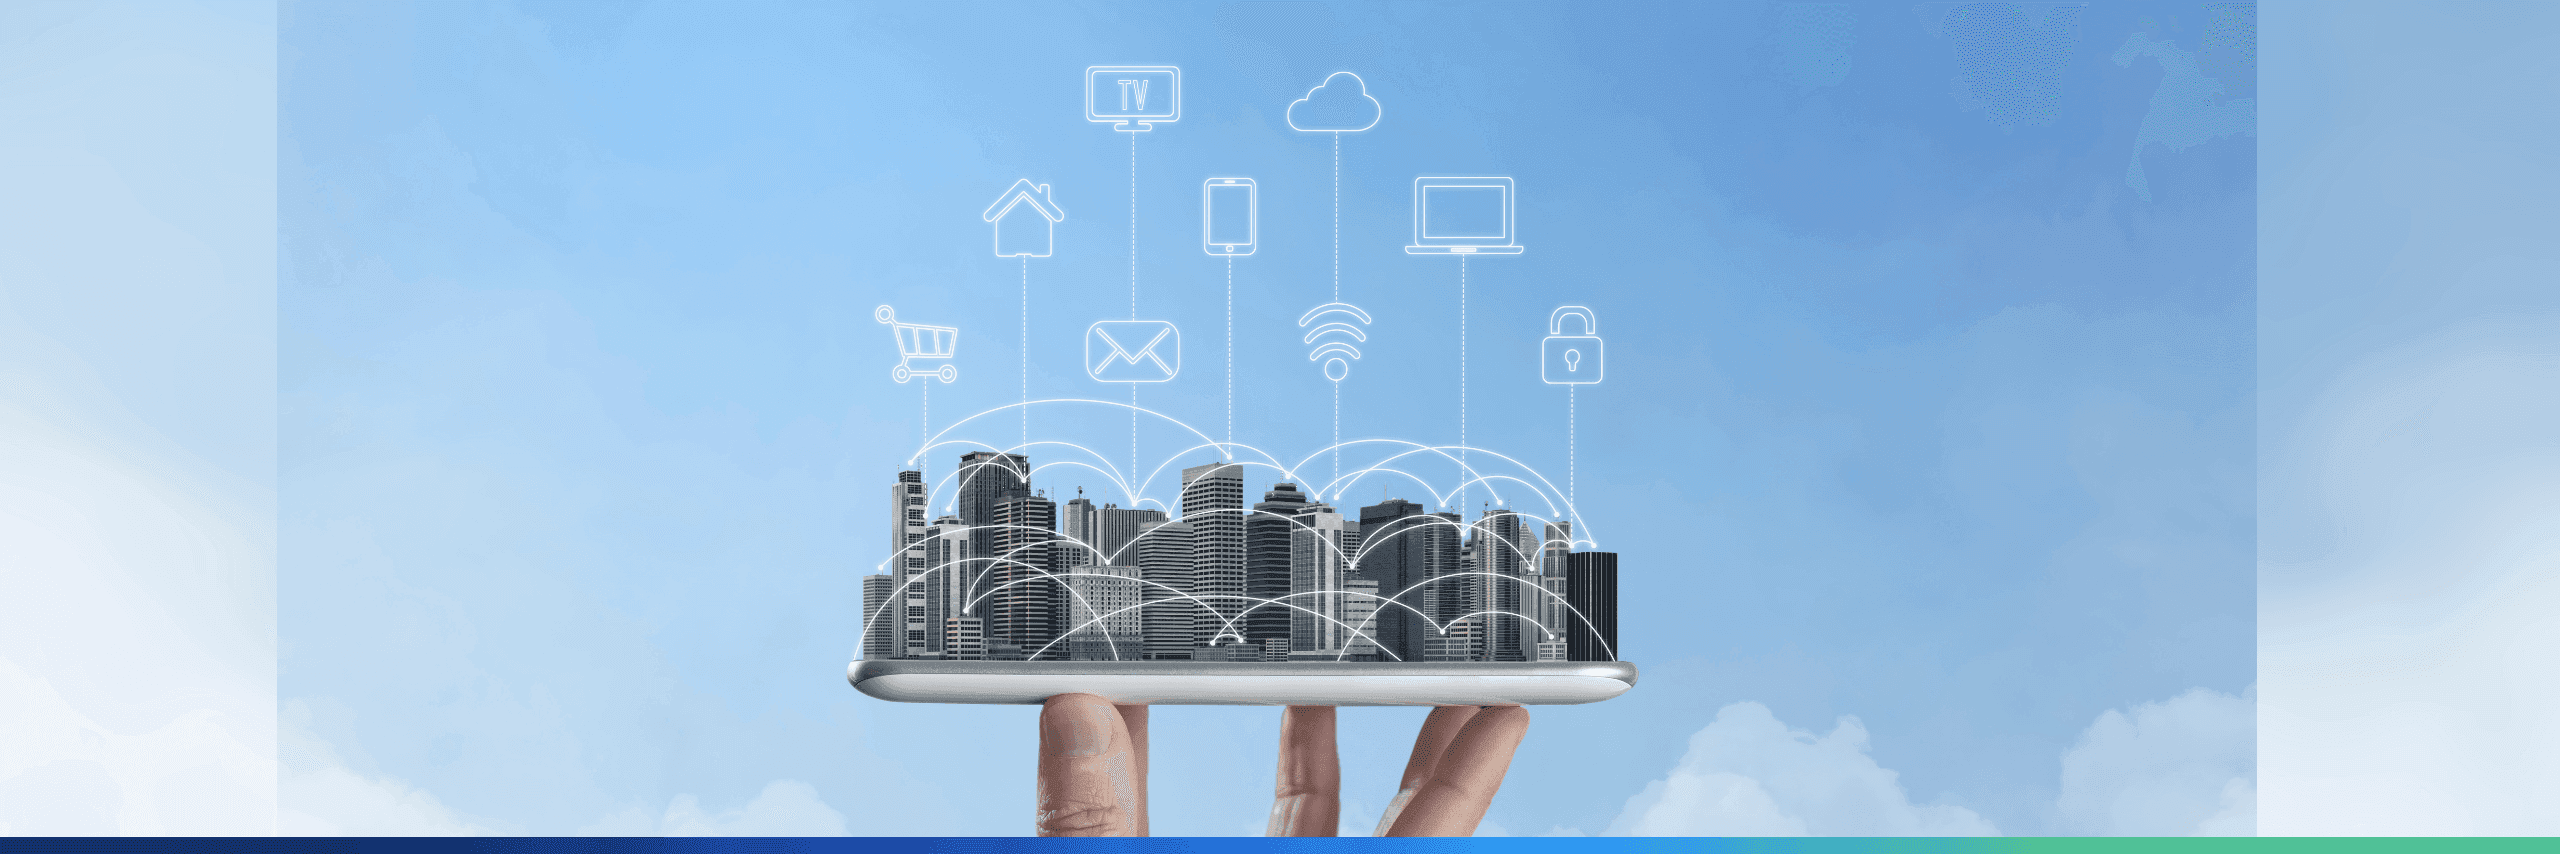 O koncepcji Smart City, czyli jak technologia pomaga tworzyć inteligentne miasta